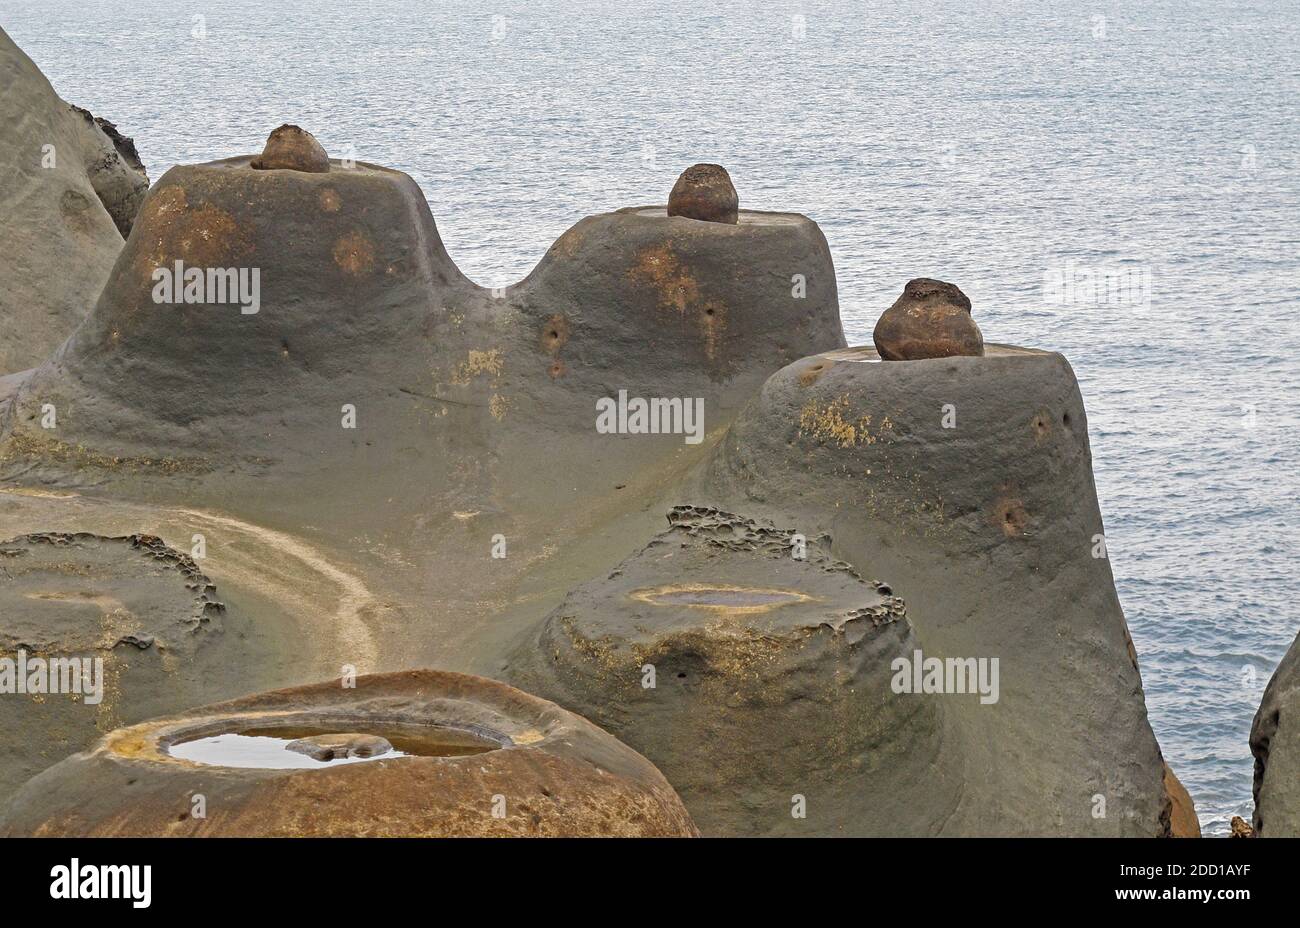 Erodierter Fels soll wie Kerzen aussehen Yehliu Geopark, Taiwan April Stockfoto